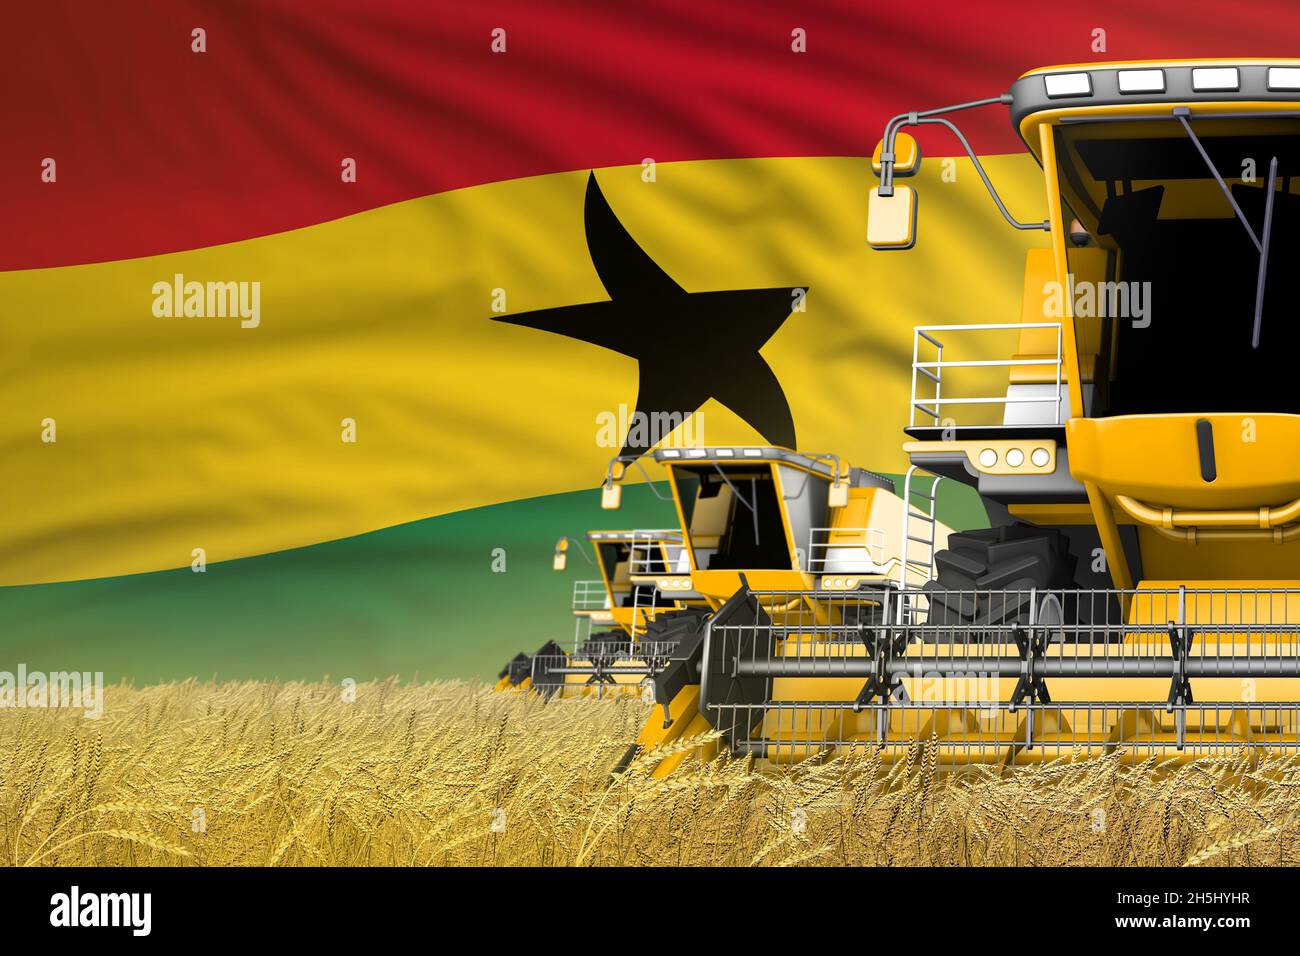 3 gelbe moderne Mähdrescher mit Ghana-Flagge auf ländlichem Feld - Nahansicht, Farmkonzept - industrielle 3D-Illustration Stockfoto